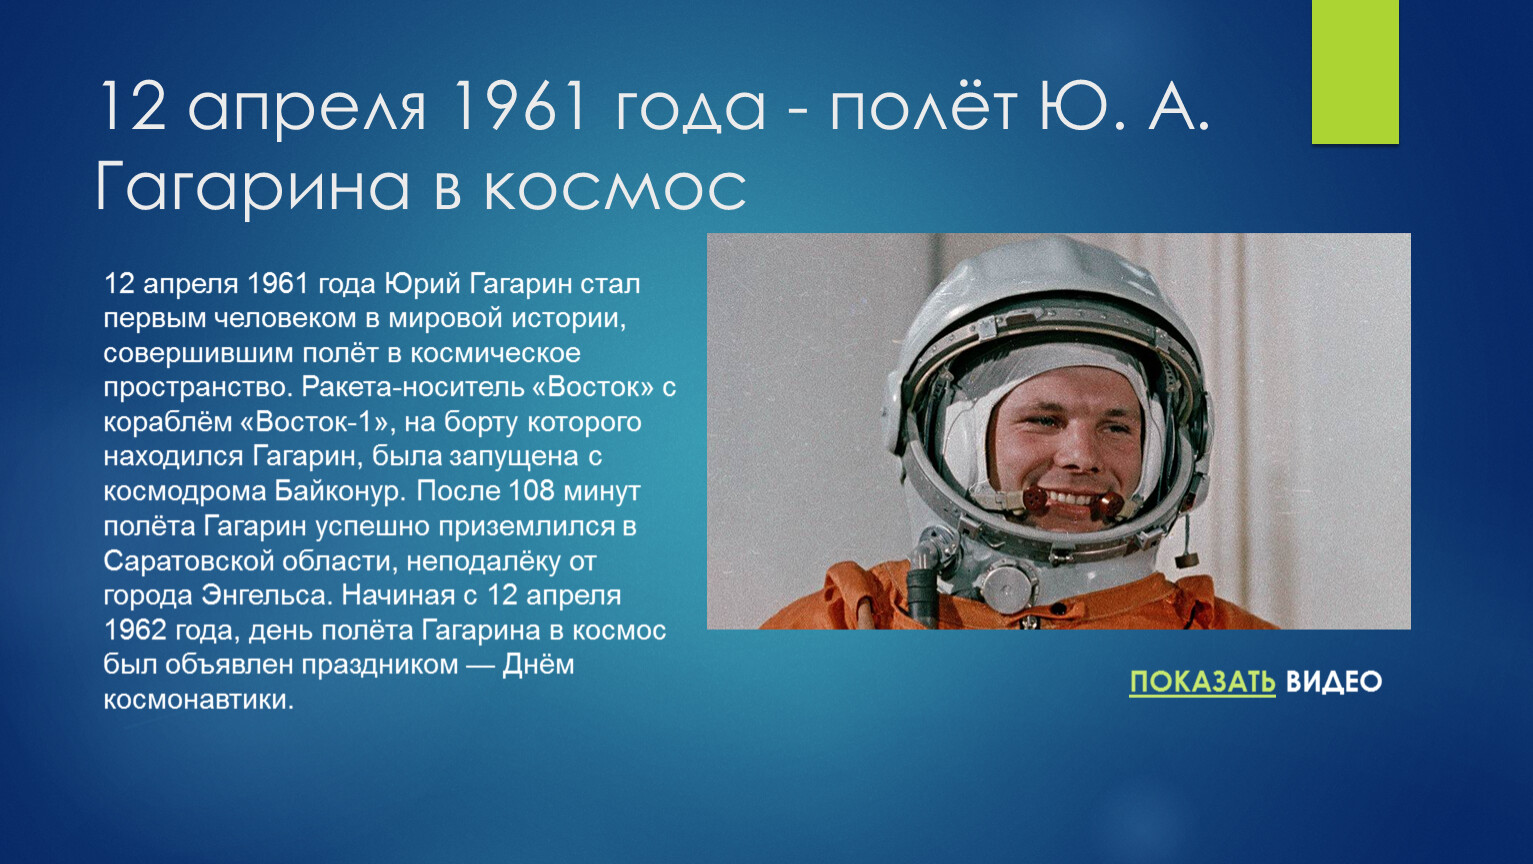 12 апреля первый полет человека в космос. Первый полет человека в космос (ю. а. Гагарин). 1961 Полет ю.а Гагарина в космос. Гагарин 12 апреля 1961 года.